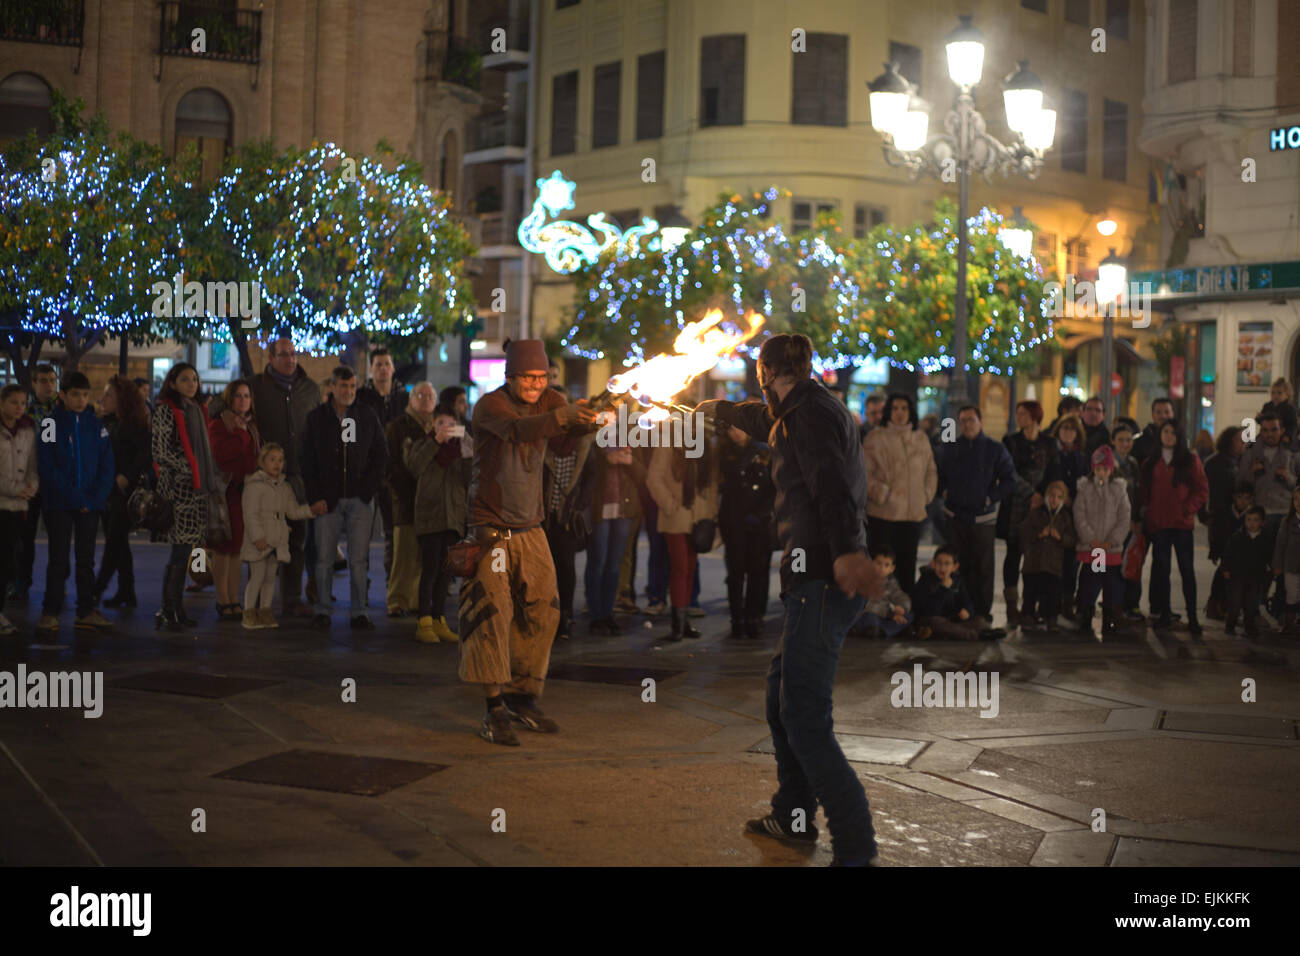 CORDOBA - JAN 4: A Street Entertainer spielen mit Feuer Fackel vor einer großen Menschenmenge, am 4. Januar 2015 in Cordoba Stockfoto